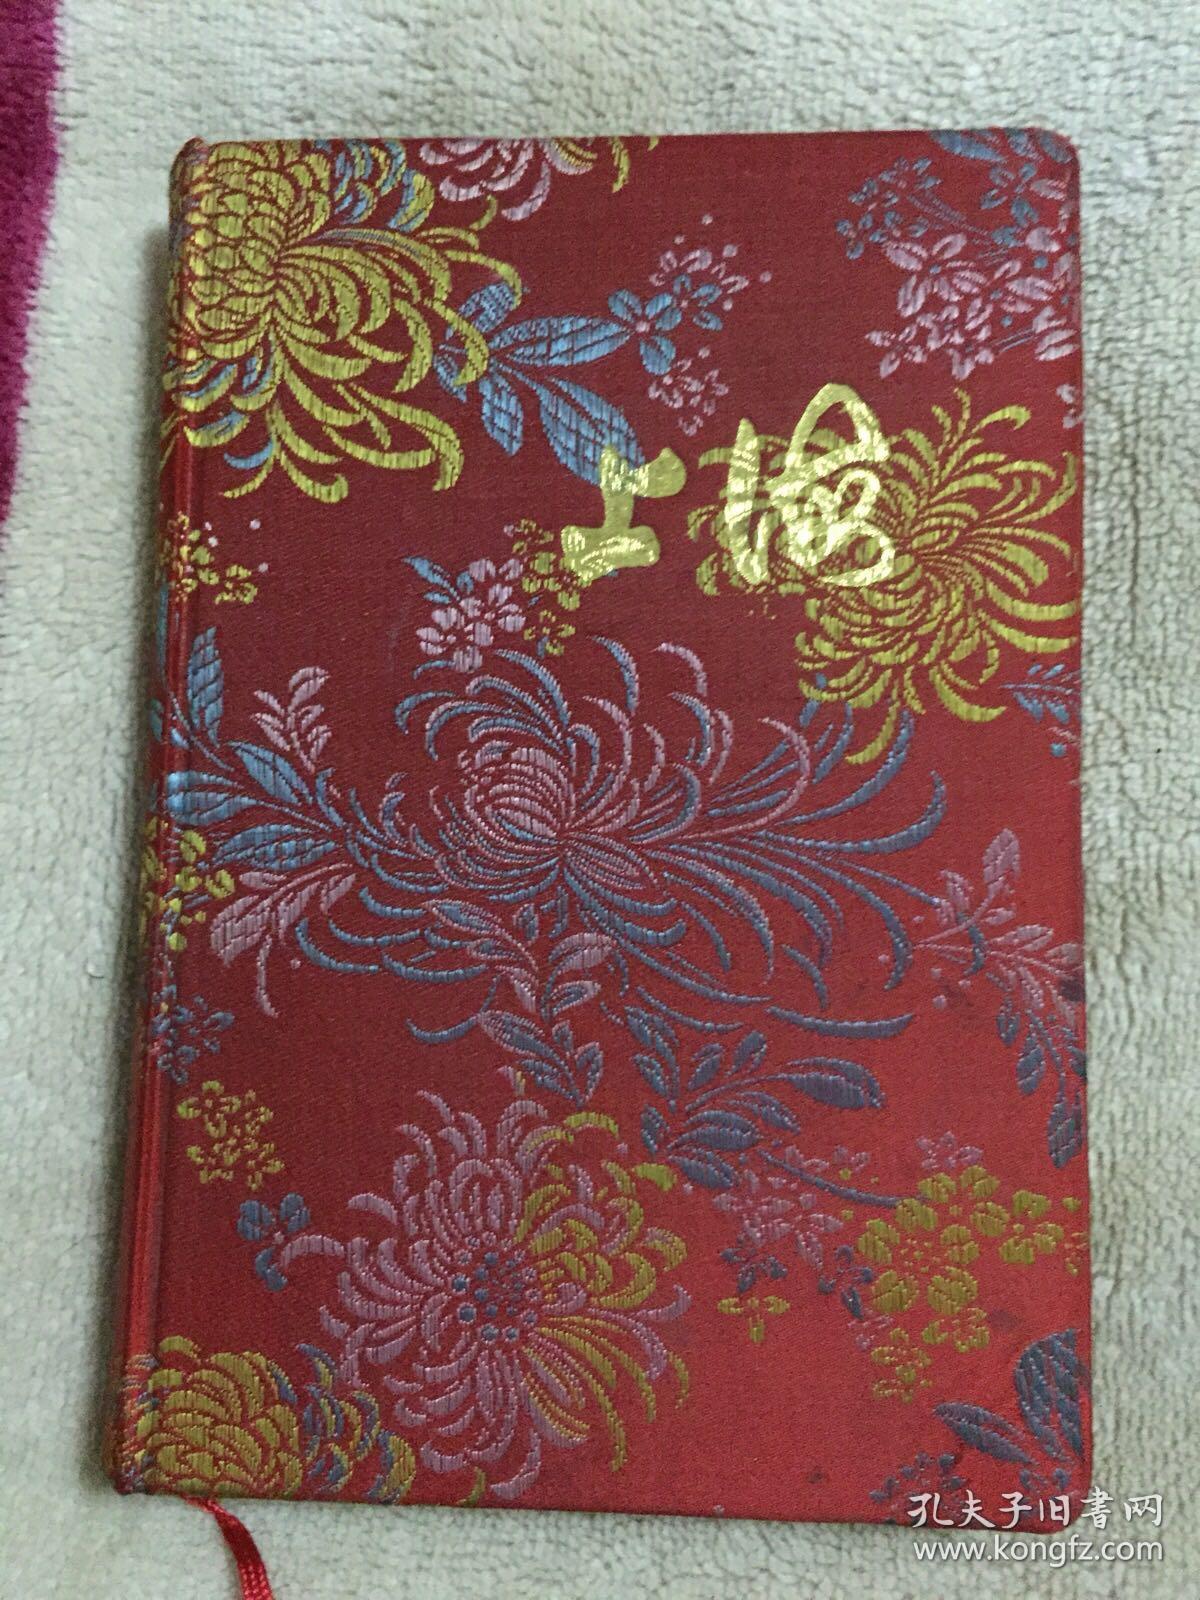 上海日记本